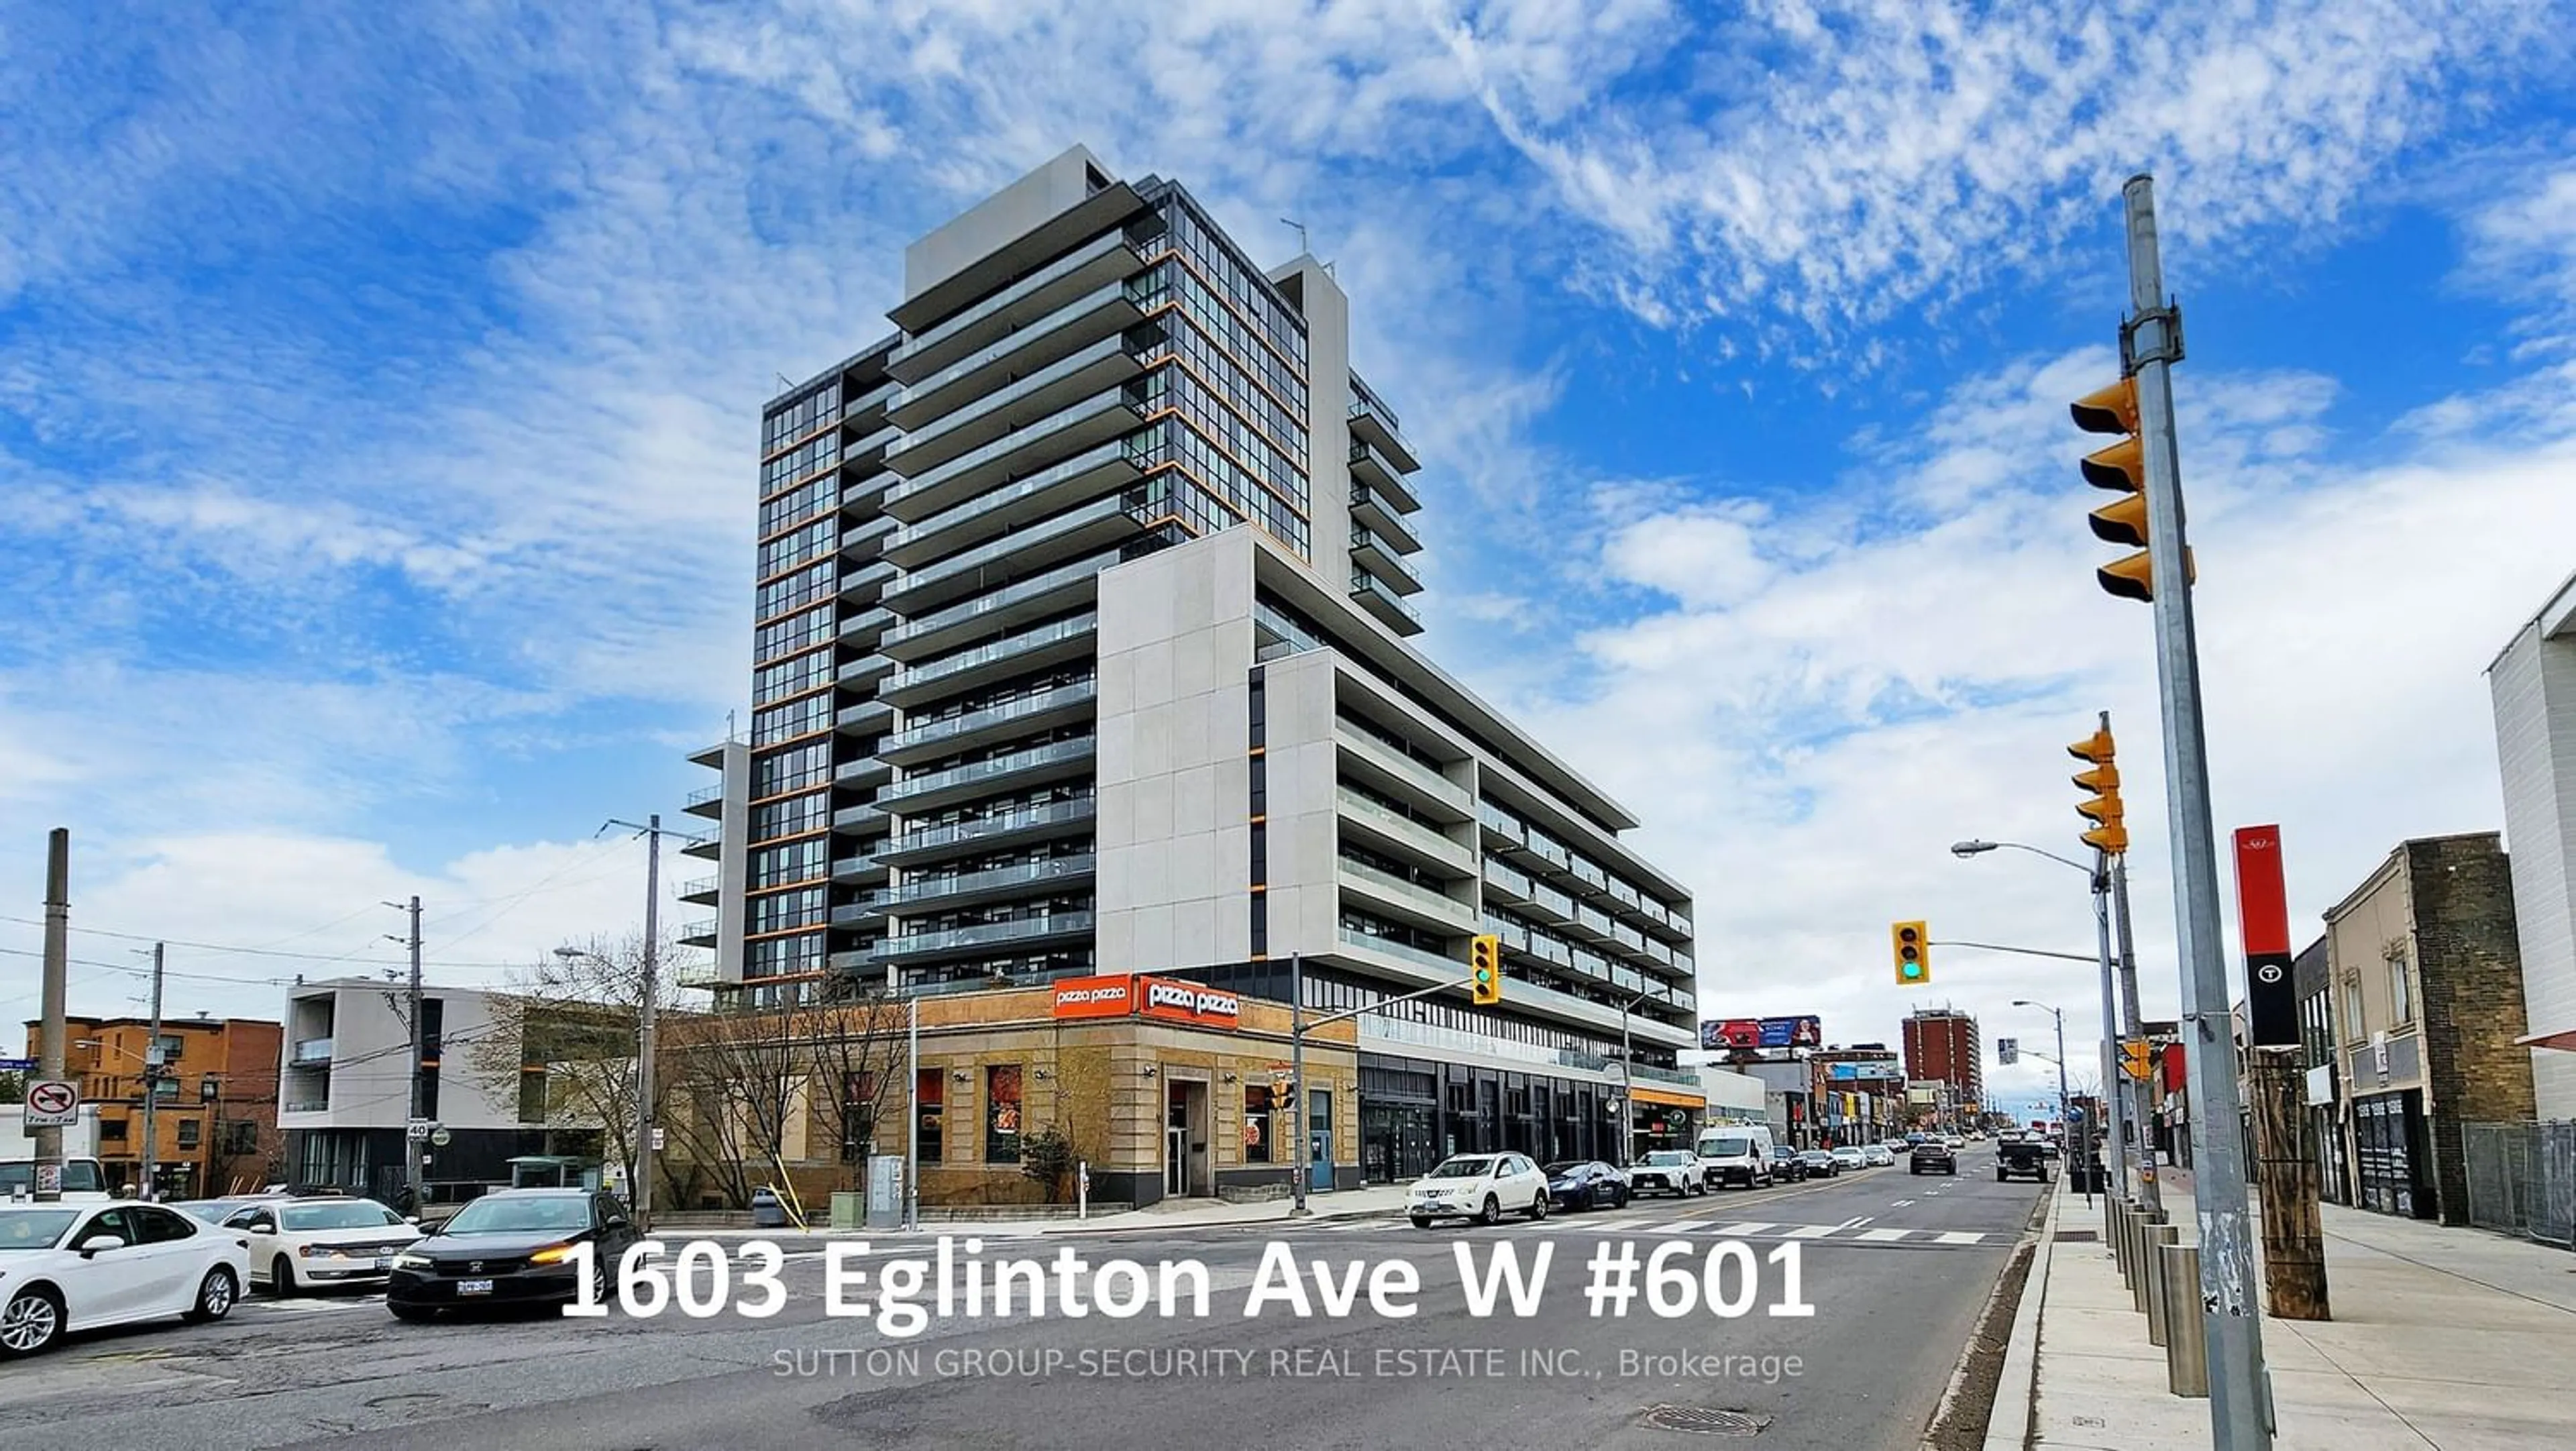 A pic from exterior of the house or condo for 1603 Eglinton Ave ##601, Toronto Ontario M6E 0A1